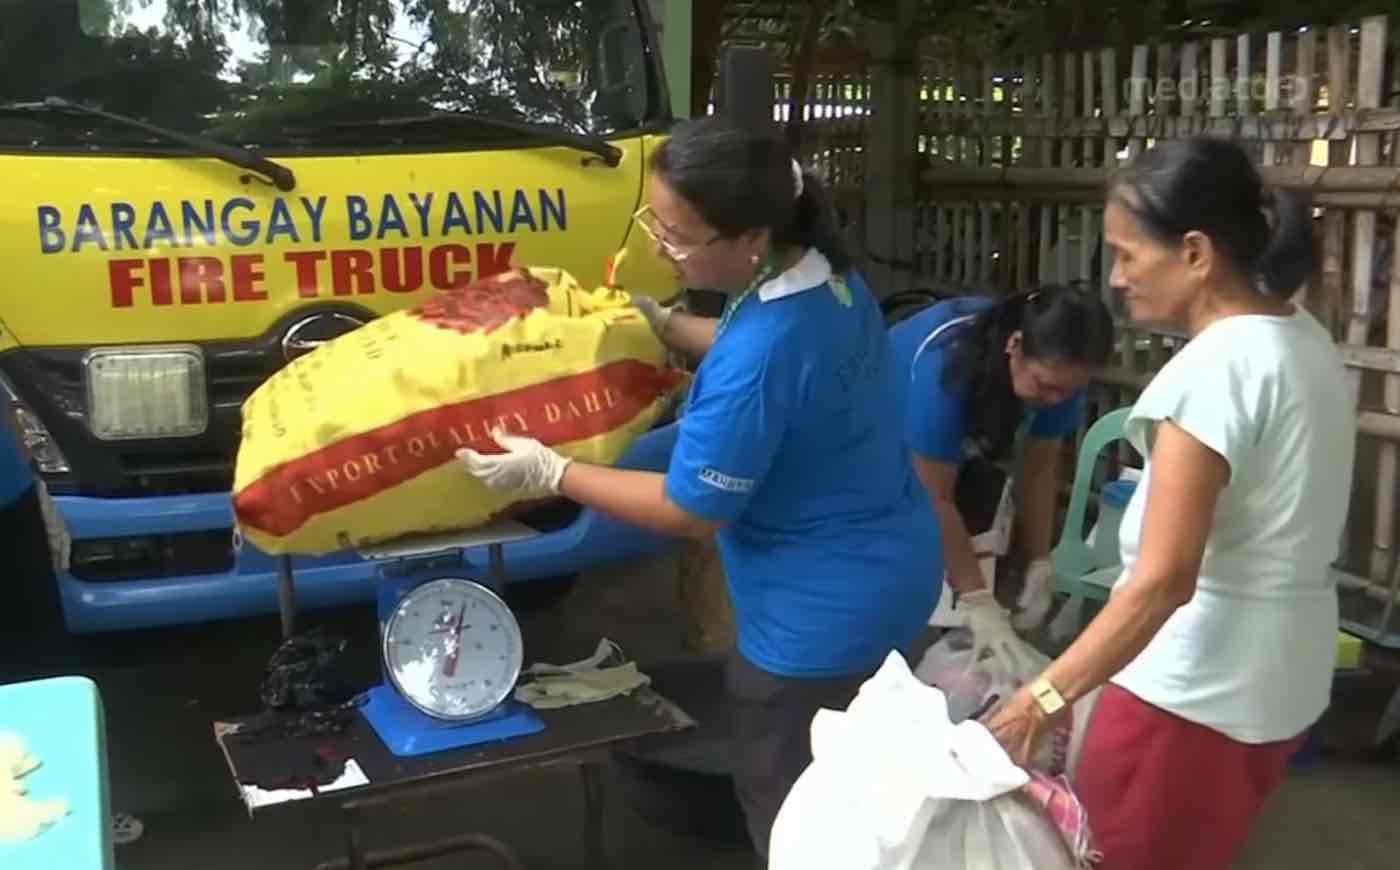 Villager-Trading-Plastic-for-Rice-CNA-Youtube-Screenshot.jpg